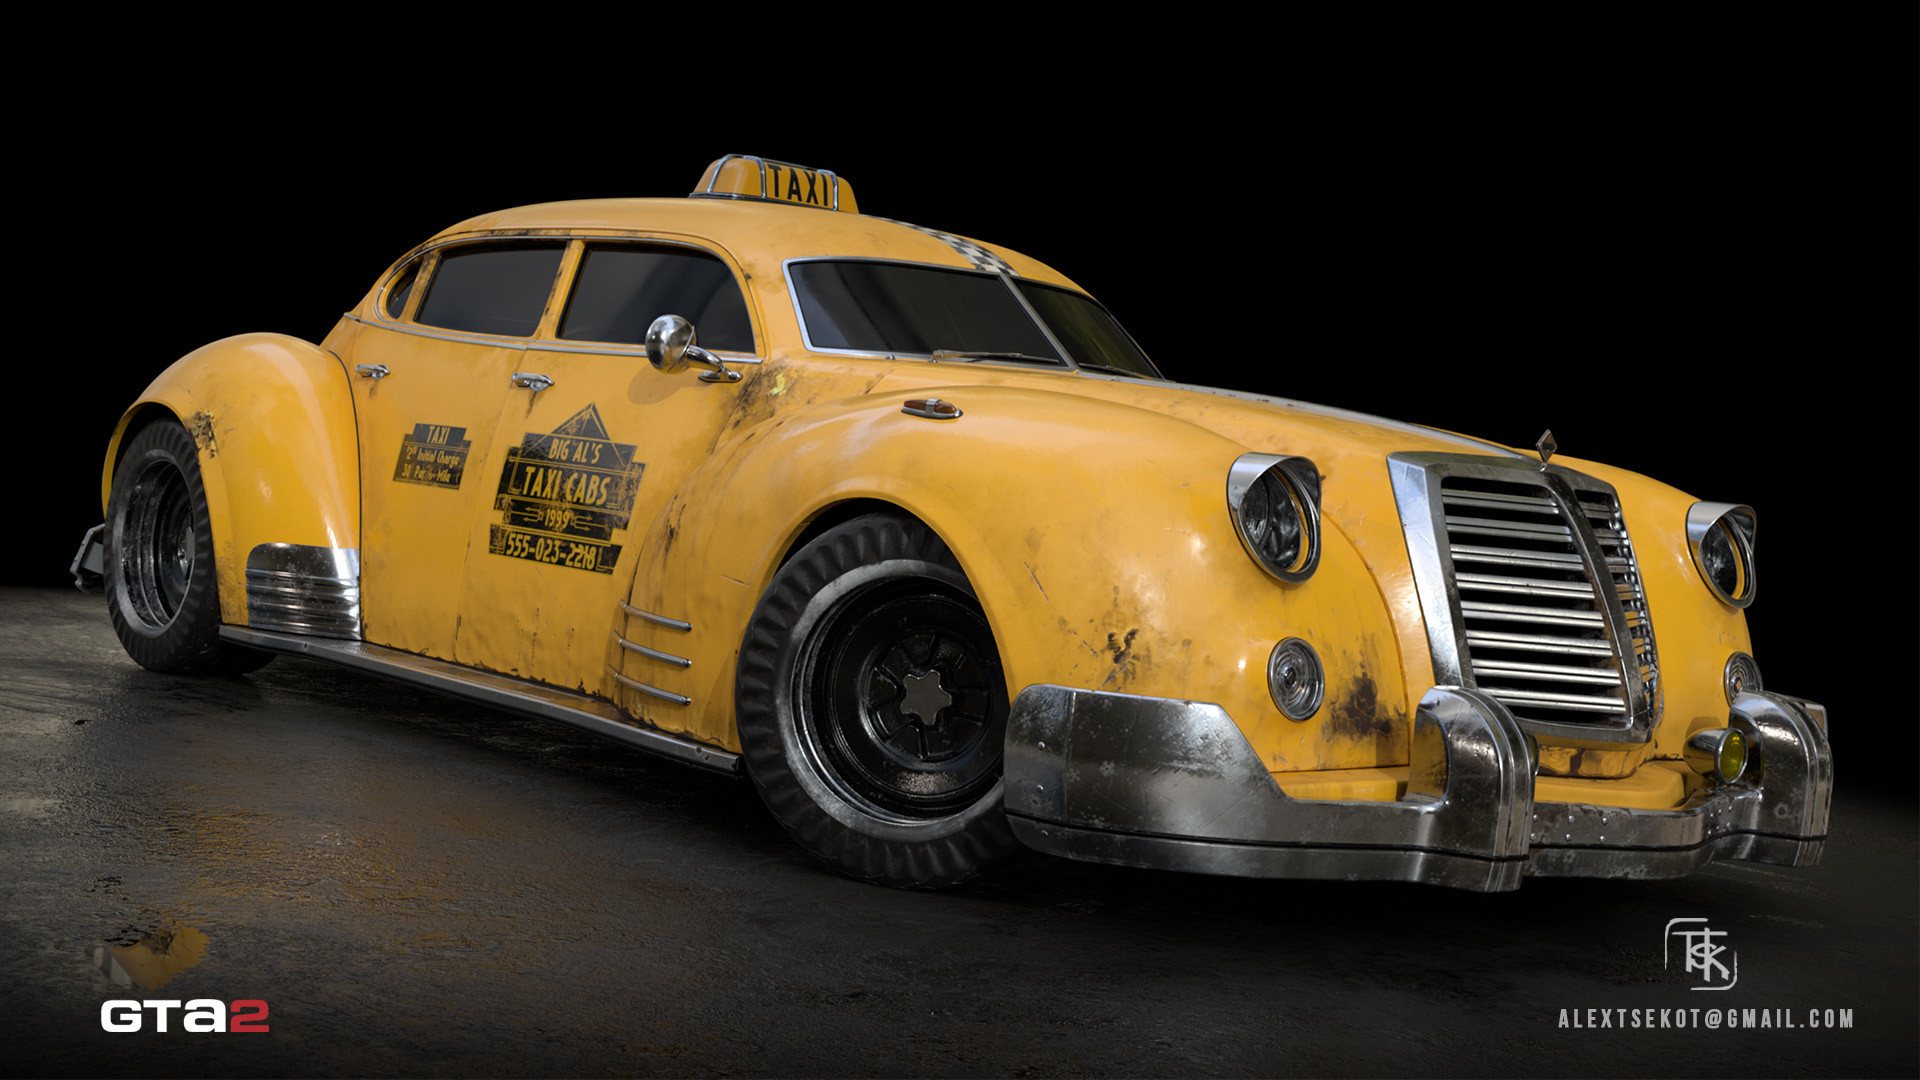 GTA 2 - Taxi XPress